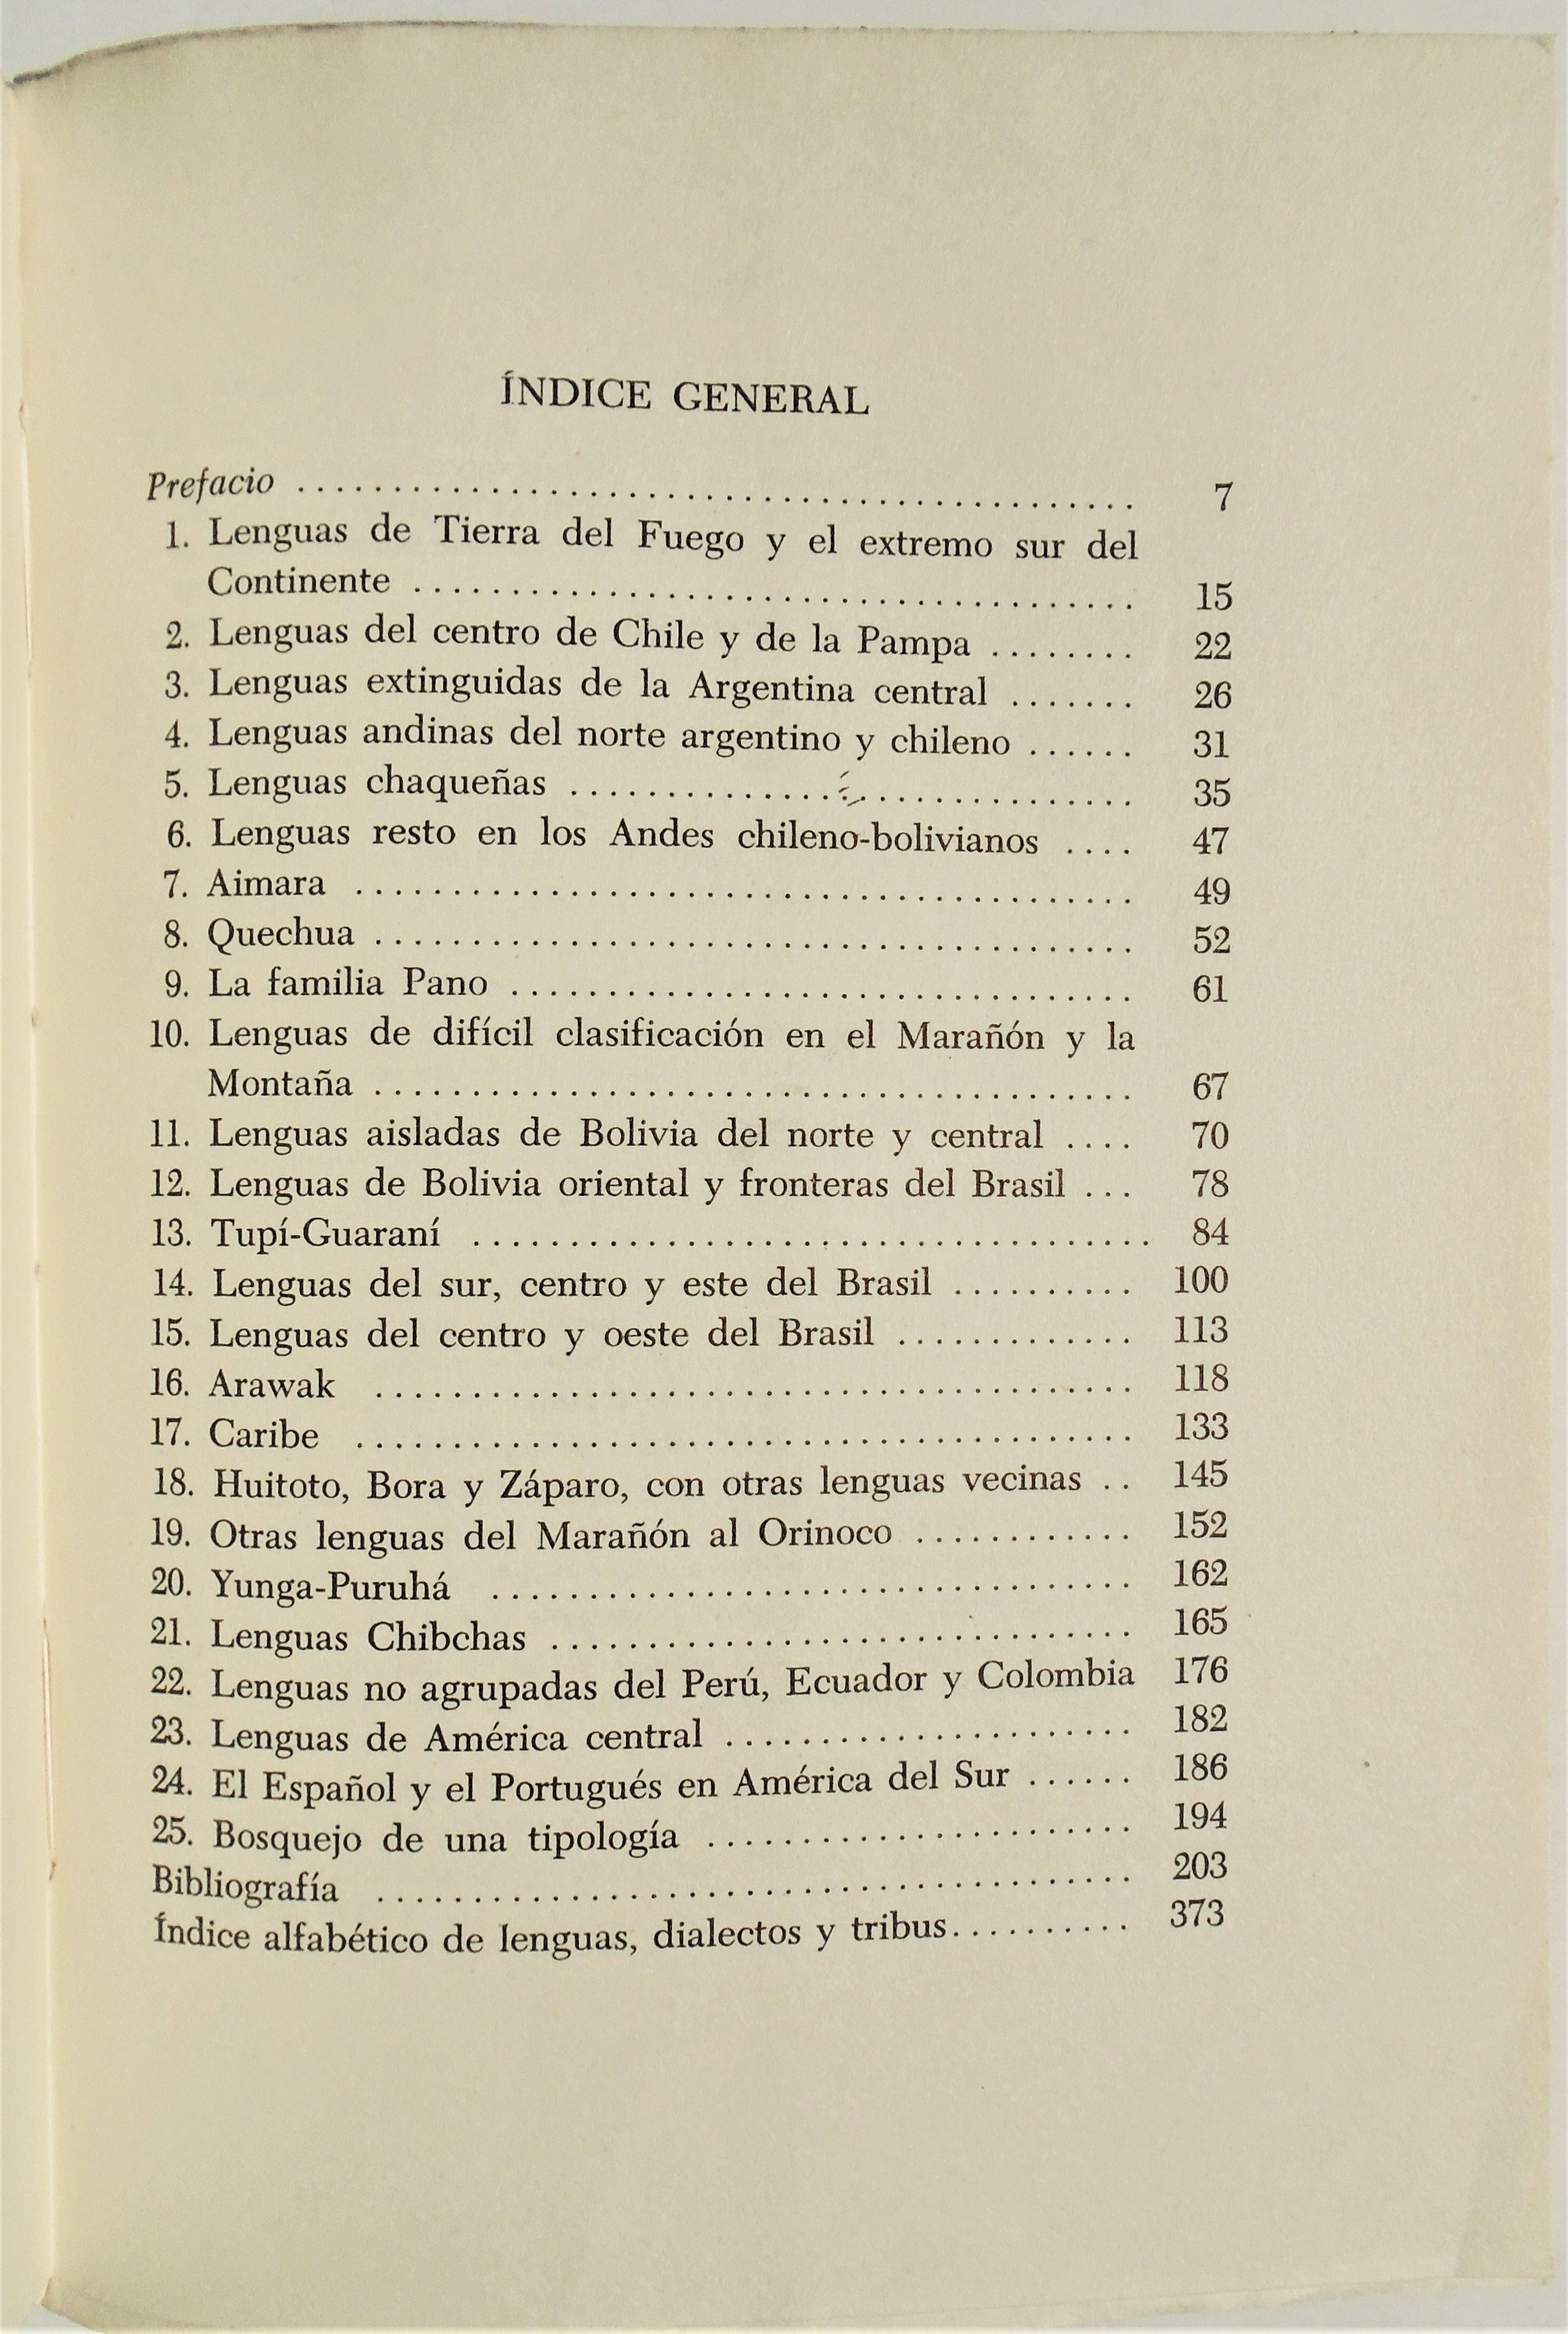 Antonio Tovar - Catálogo de las lenguas de américa del sur